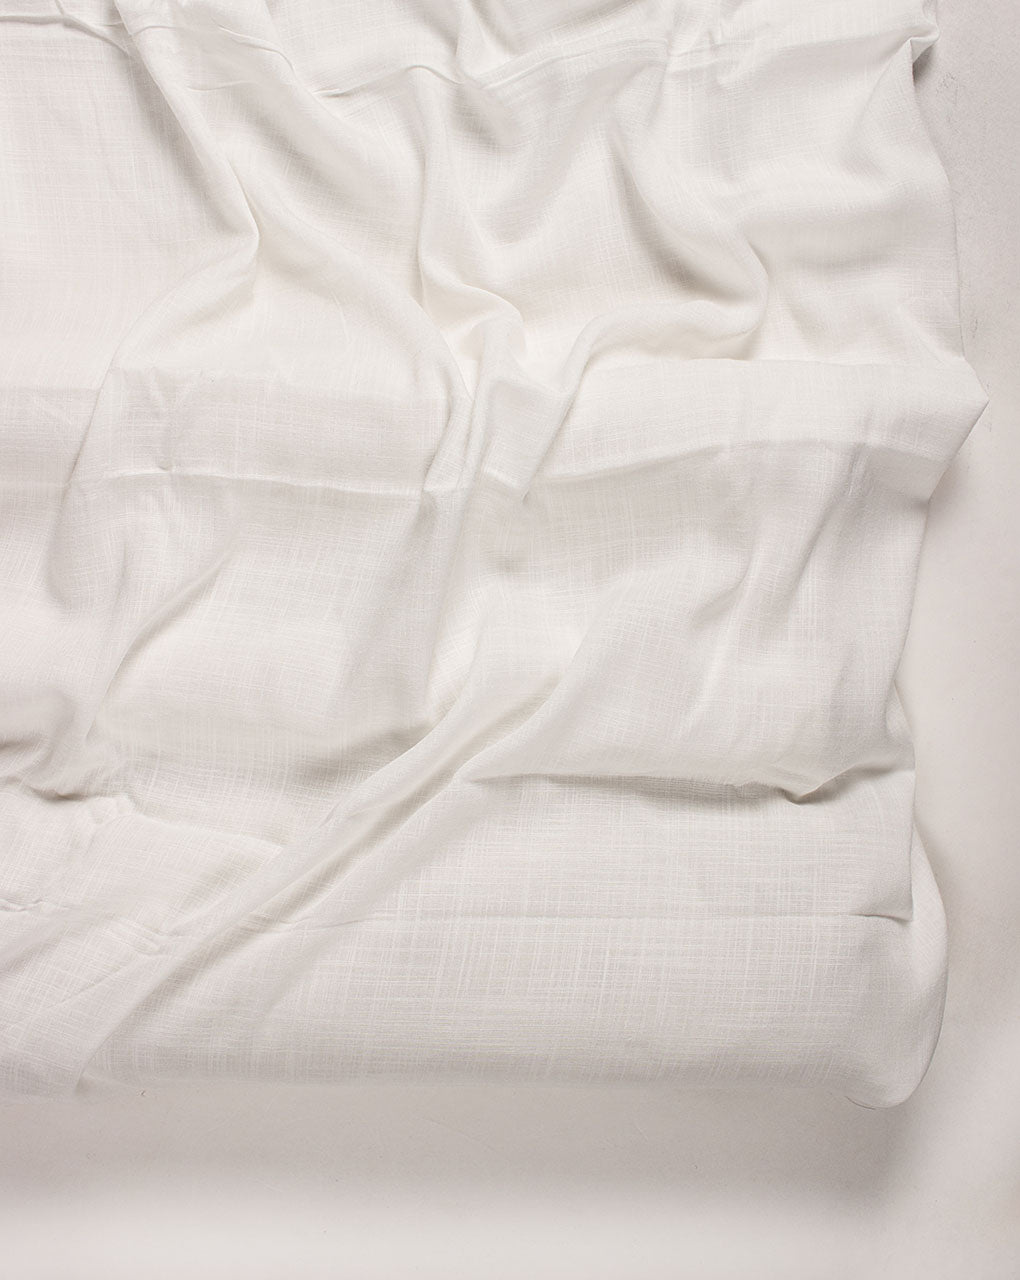 Greige 2/40s Cotton x 12s Flex Fabric